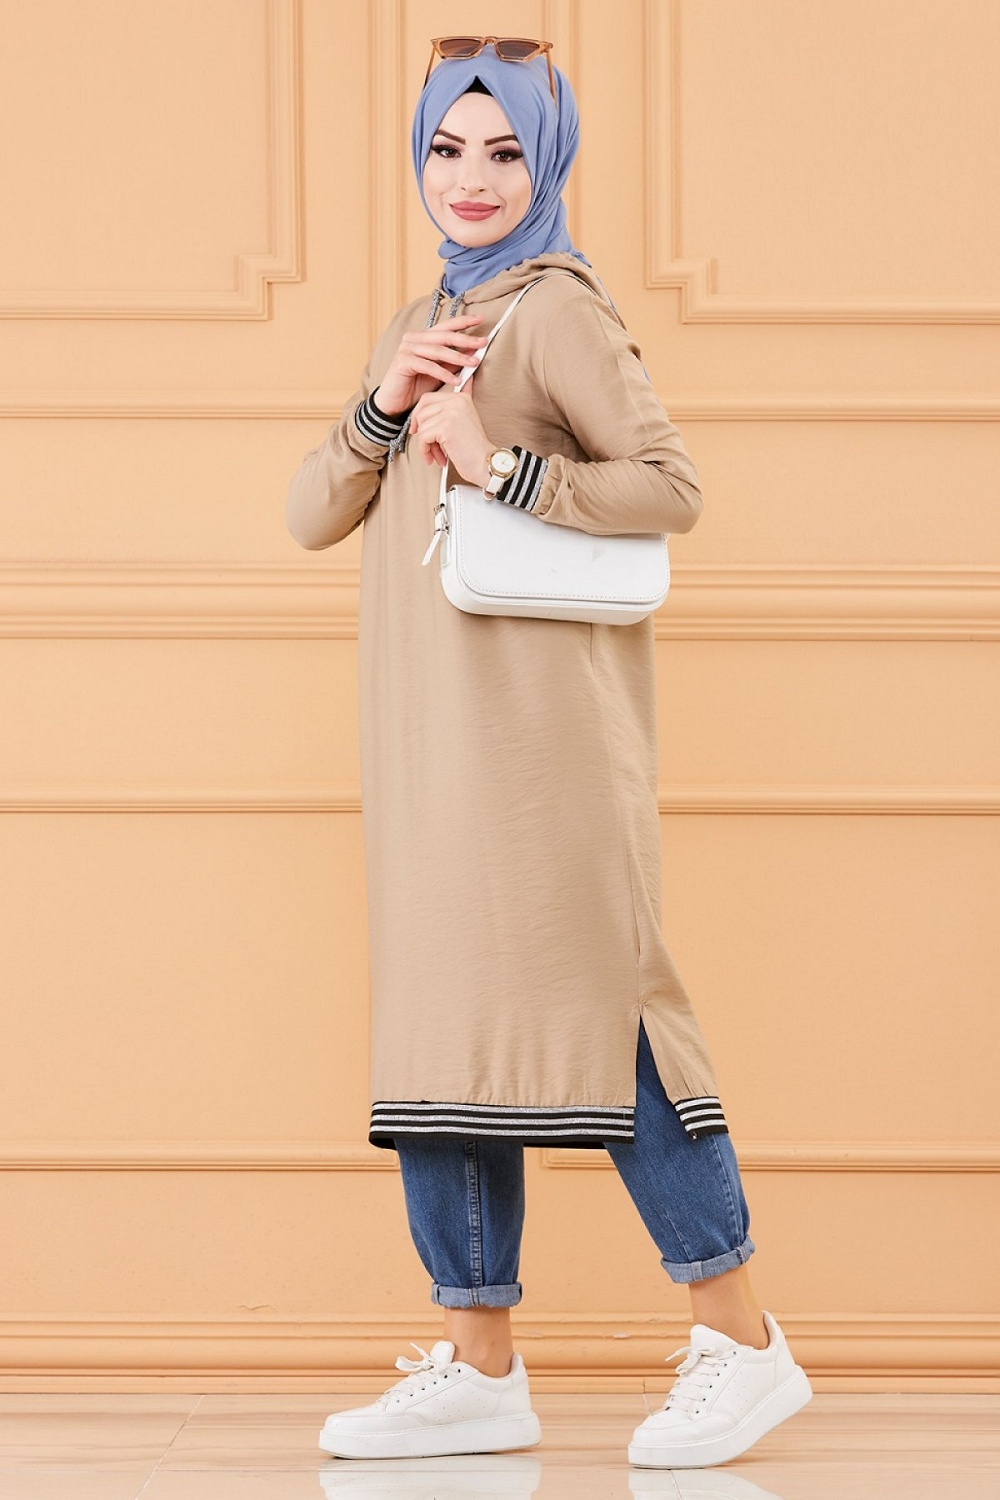 Tunique avec capuche (Tenue décontractée femme musulmane) - Couleur beige -  Prêt à porter et accessoires sur